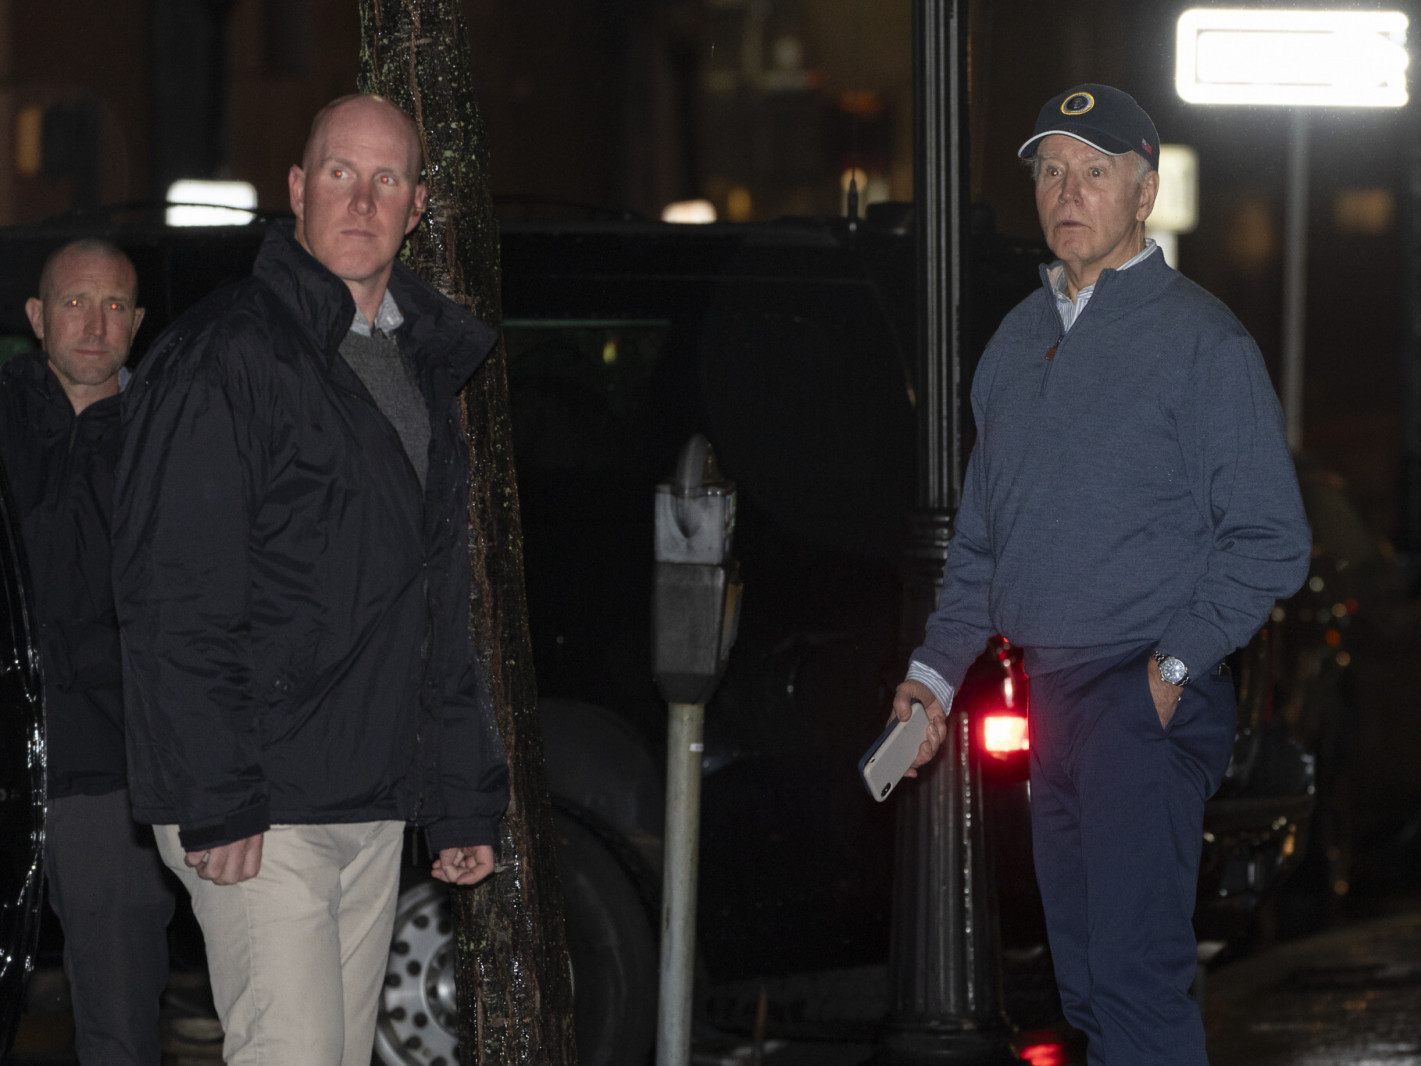 ВИДЕО: АНУ-ын Ерөнхийлөгч Жо Байдены хамгаалалтын цуваа руу машинтай дайрсан хэрэг гарчээ